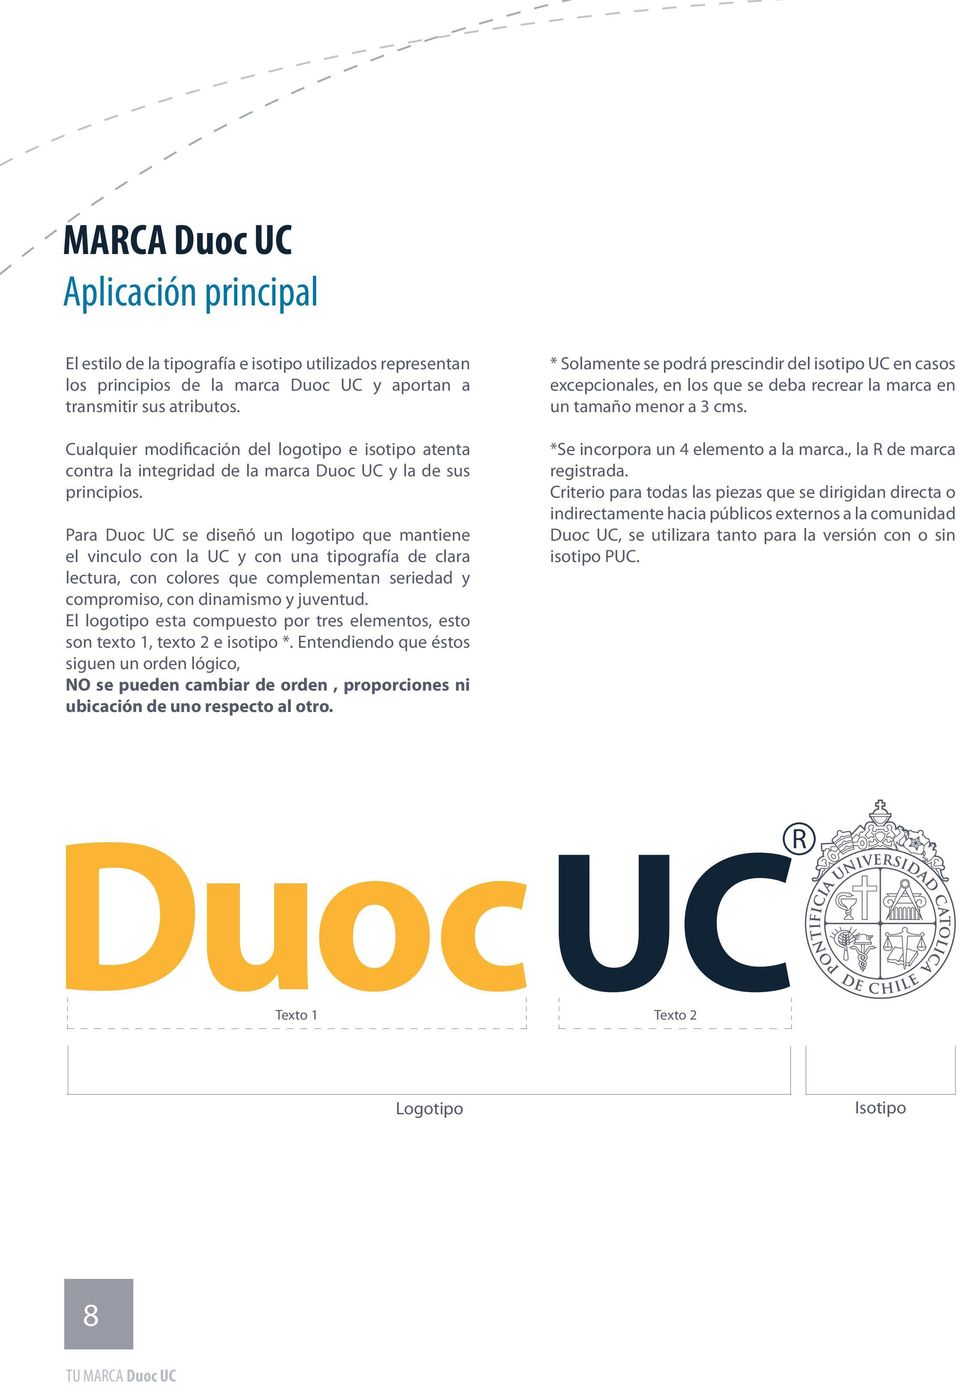 Para Duoc UC se diseñó un logotipo que mantiene el vinculo con la UC y con una tipografía de clara lectura, con colores que complementan seriedad y compromiso, con dinamismo y juventud.